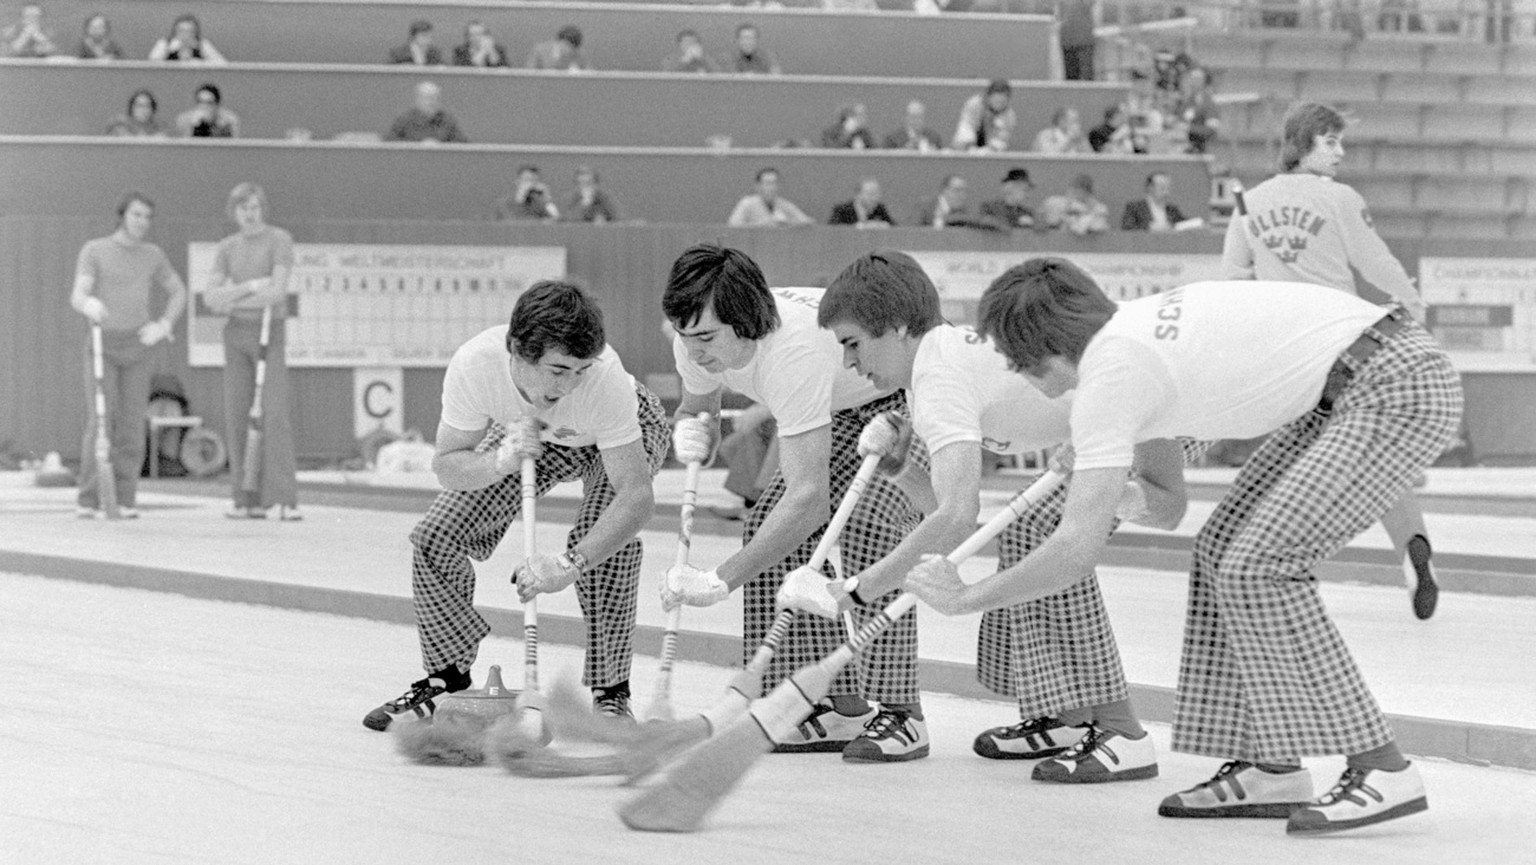 Das Schweizer Curling-Team in Aktion, aufgenommen bei den Curling-Weltmeisterschaften im Maerz 1974 in Bern. (KEYSTONE/PHOTOPRESS-ARCHIV/Str)